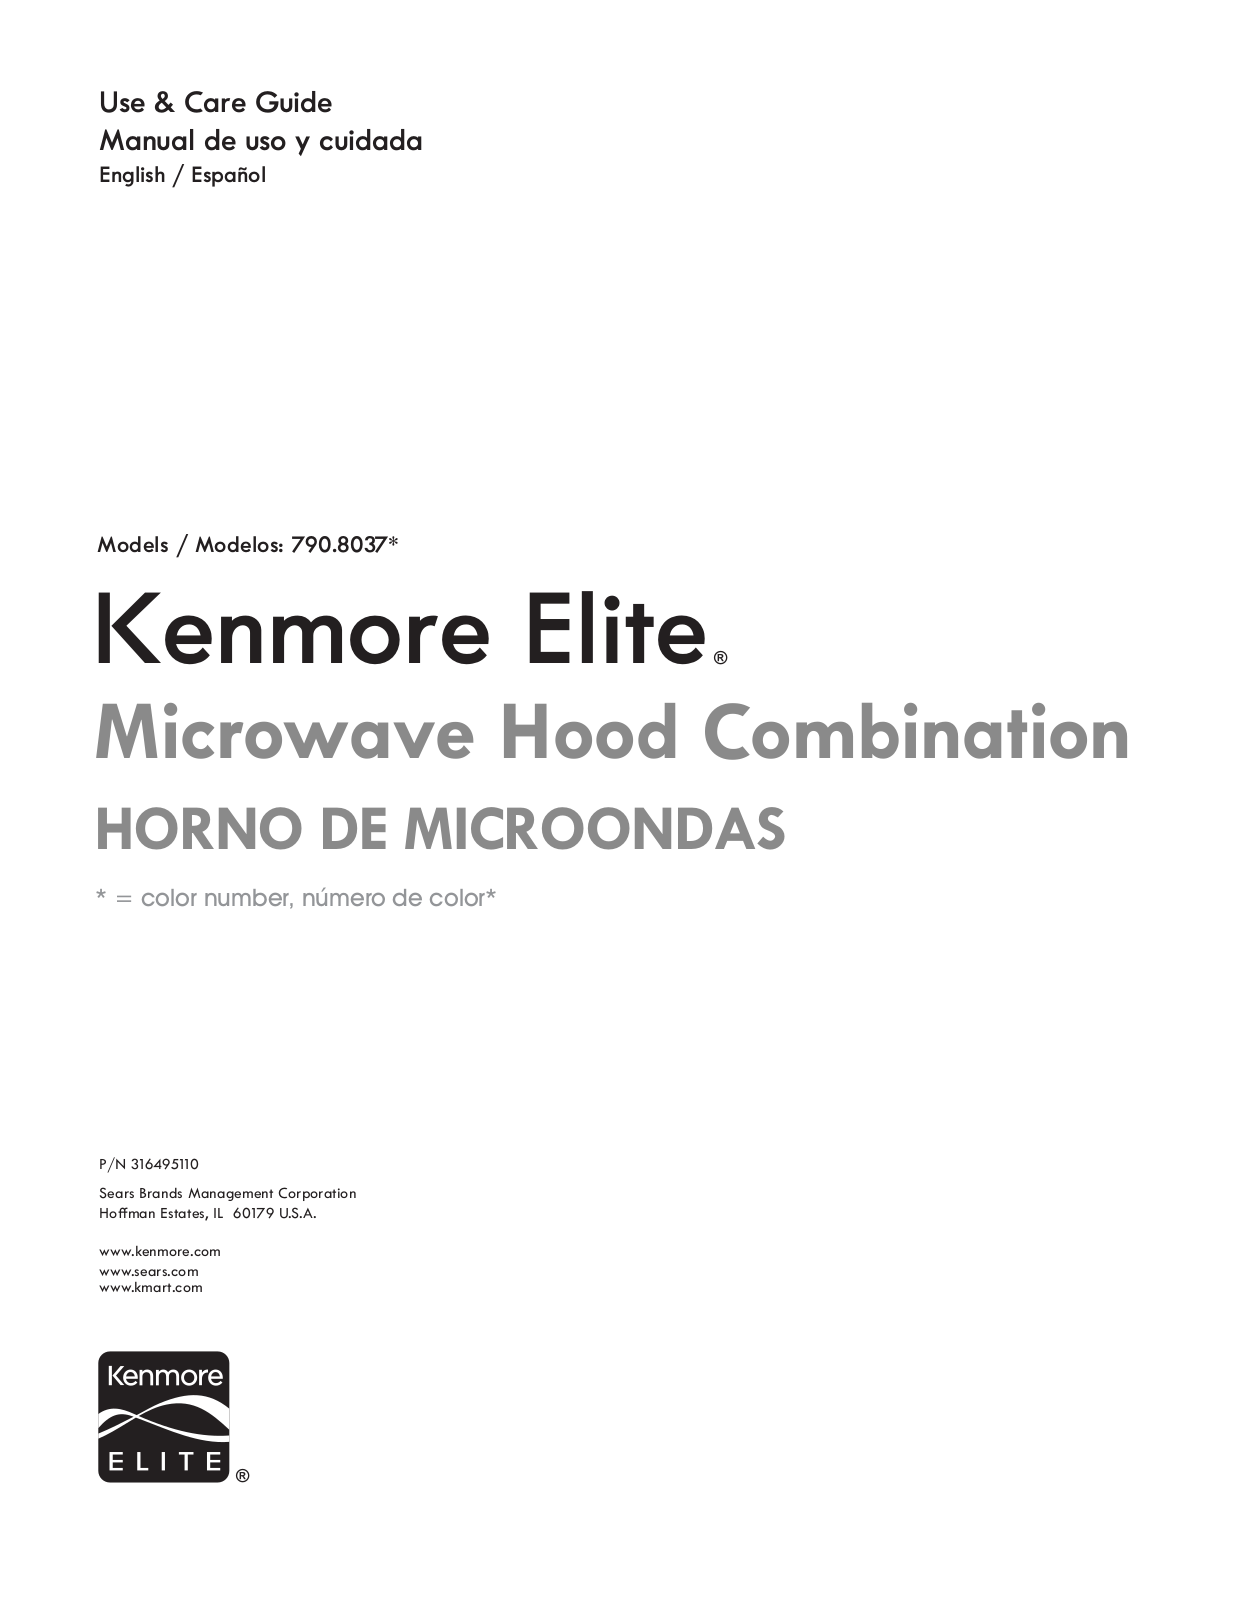 Kenmore elite microwave hood combination User Manual